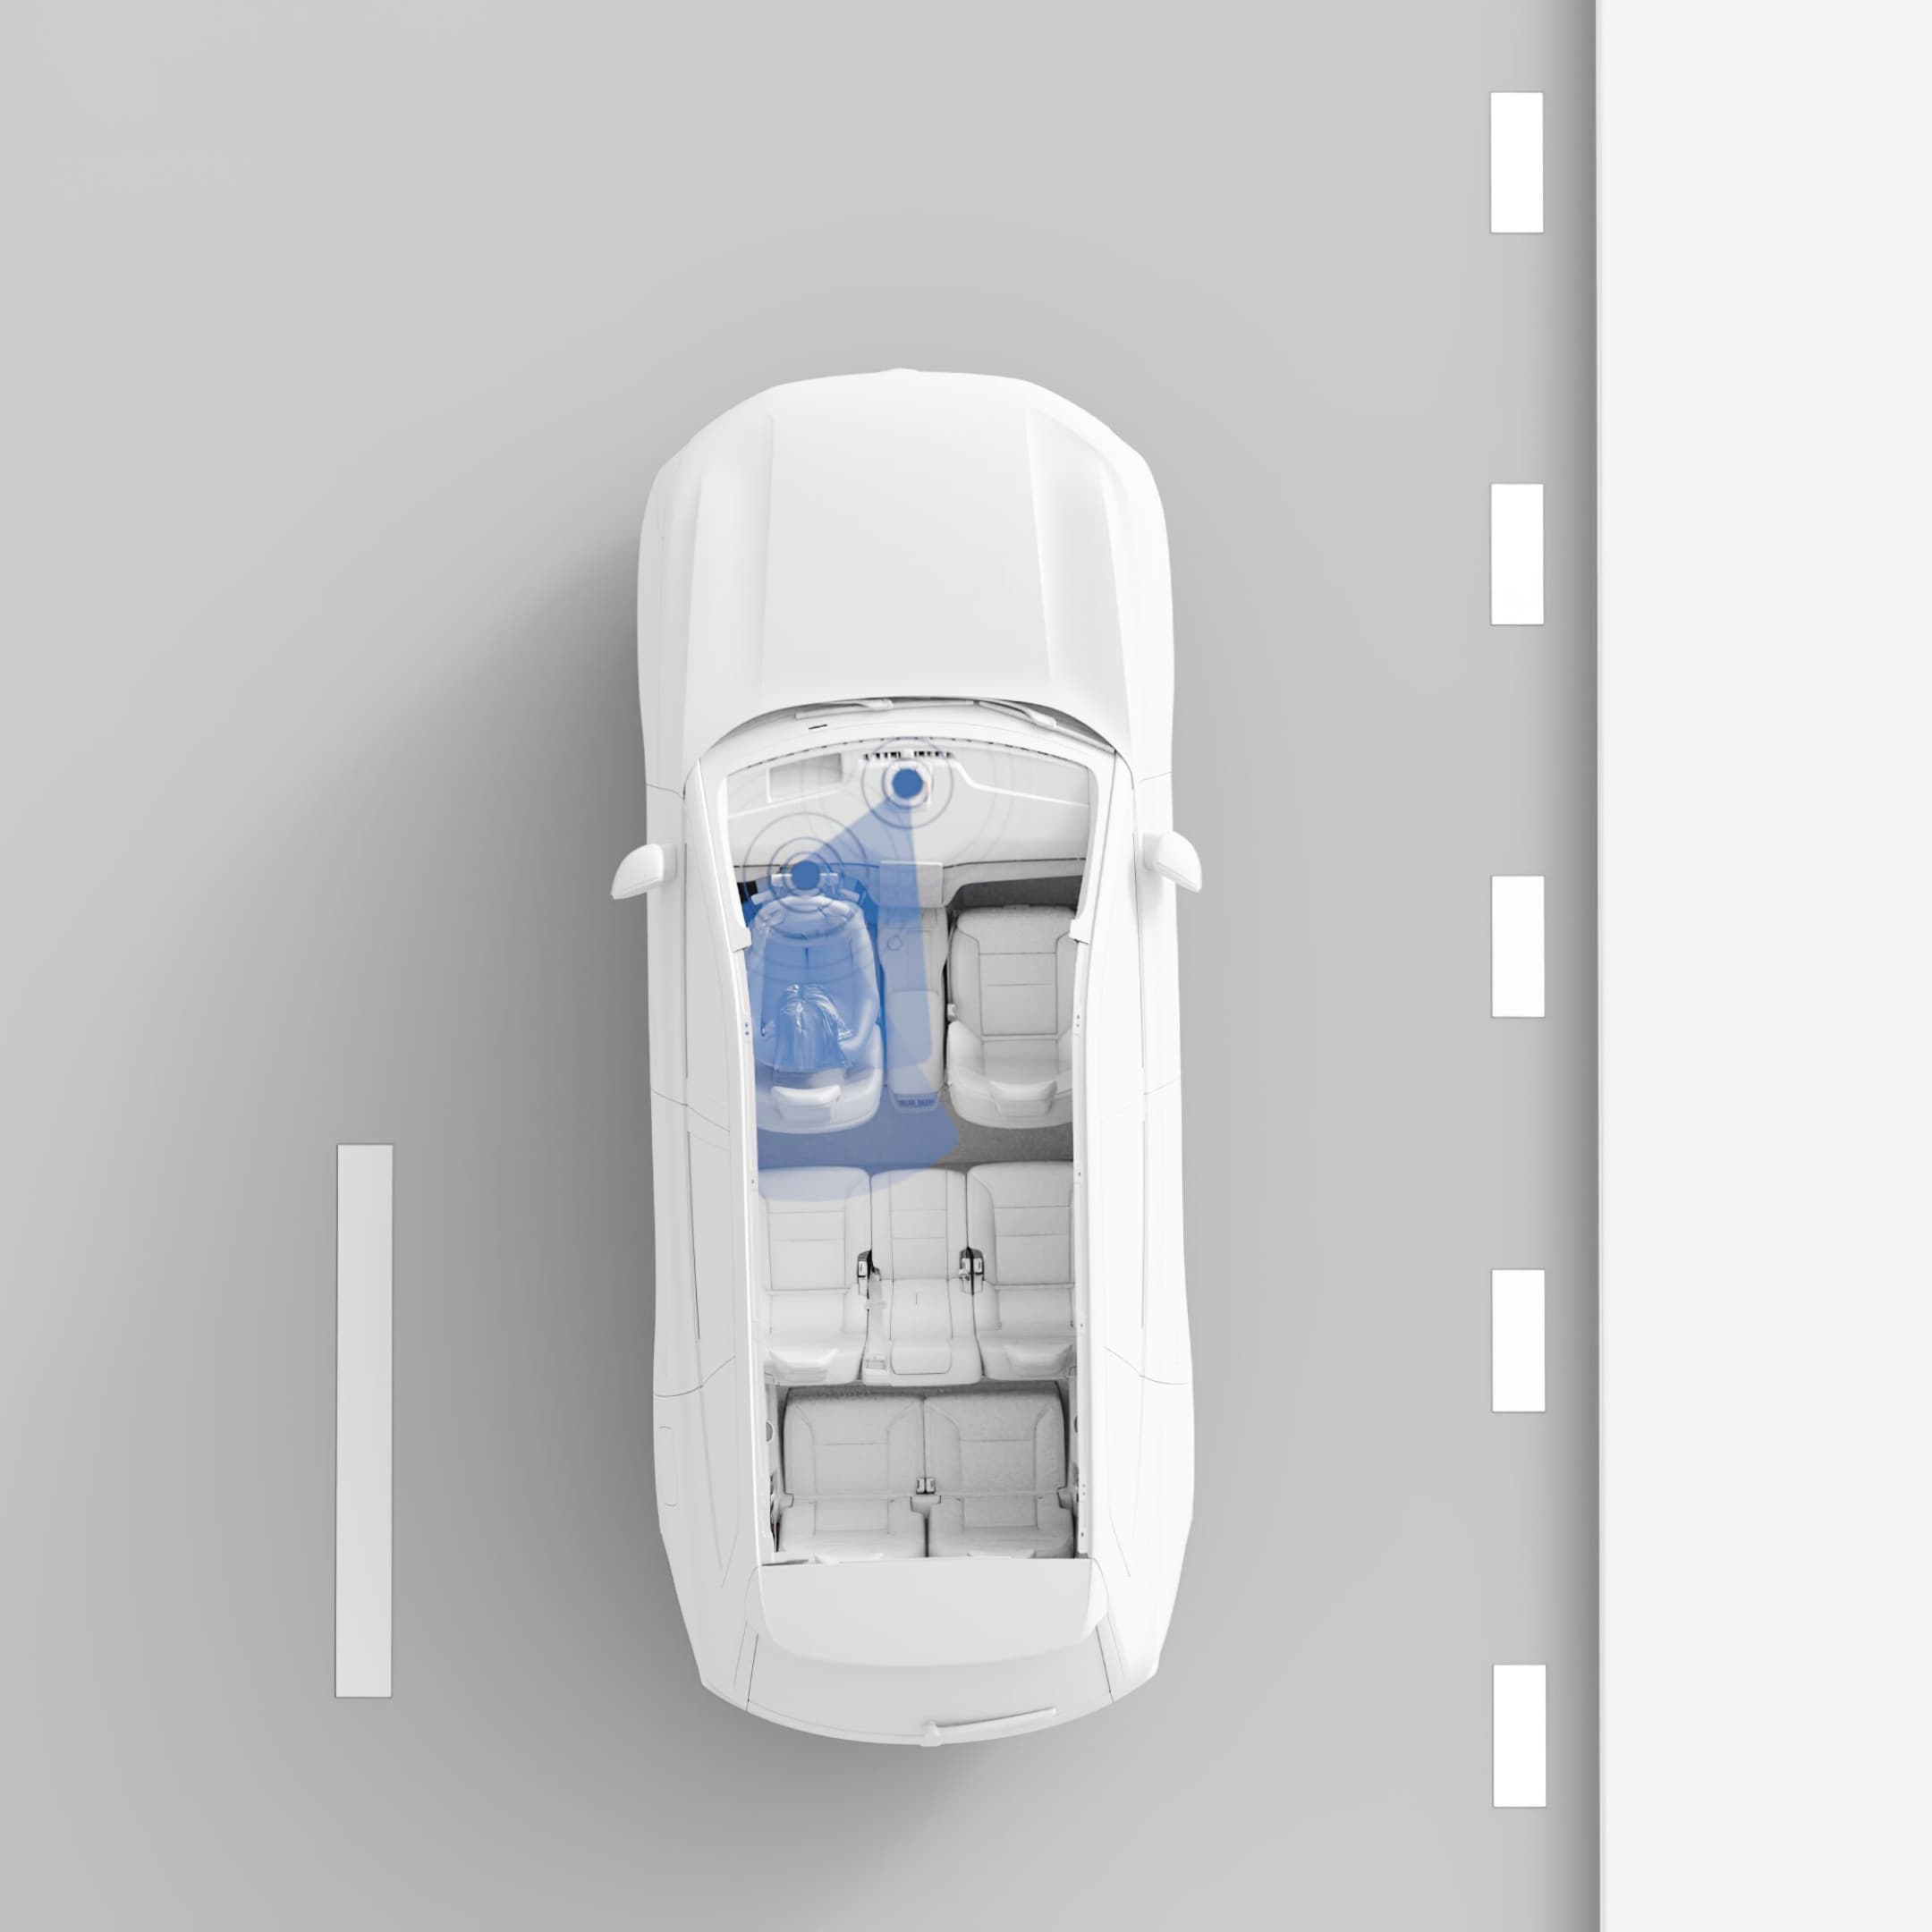 Πανοραμική εικόνα του EX90. Αισθητήρες που κατανοούν την οδήγηση και κάμερες που παρακολουθούν τον οδηγό.